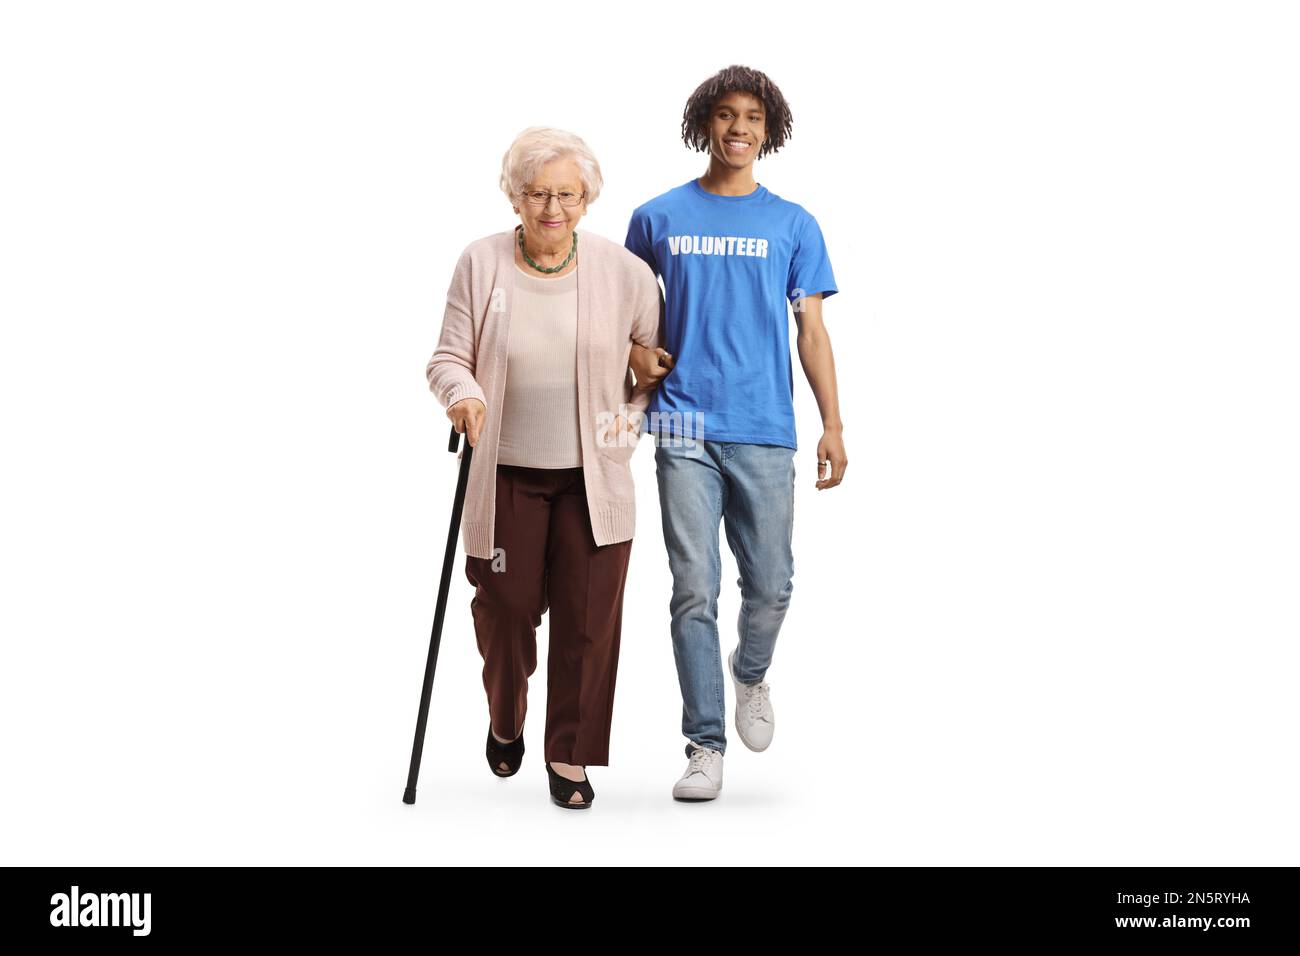 Ritratto completo di un volontario afro-americano che aiuta una donna anziana isolata su sfondo bianco Foto Stock